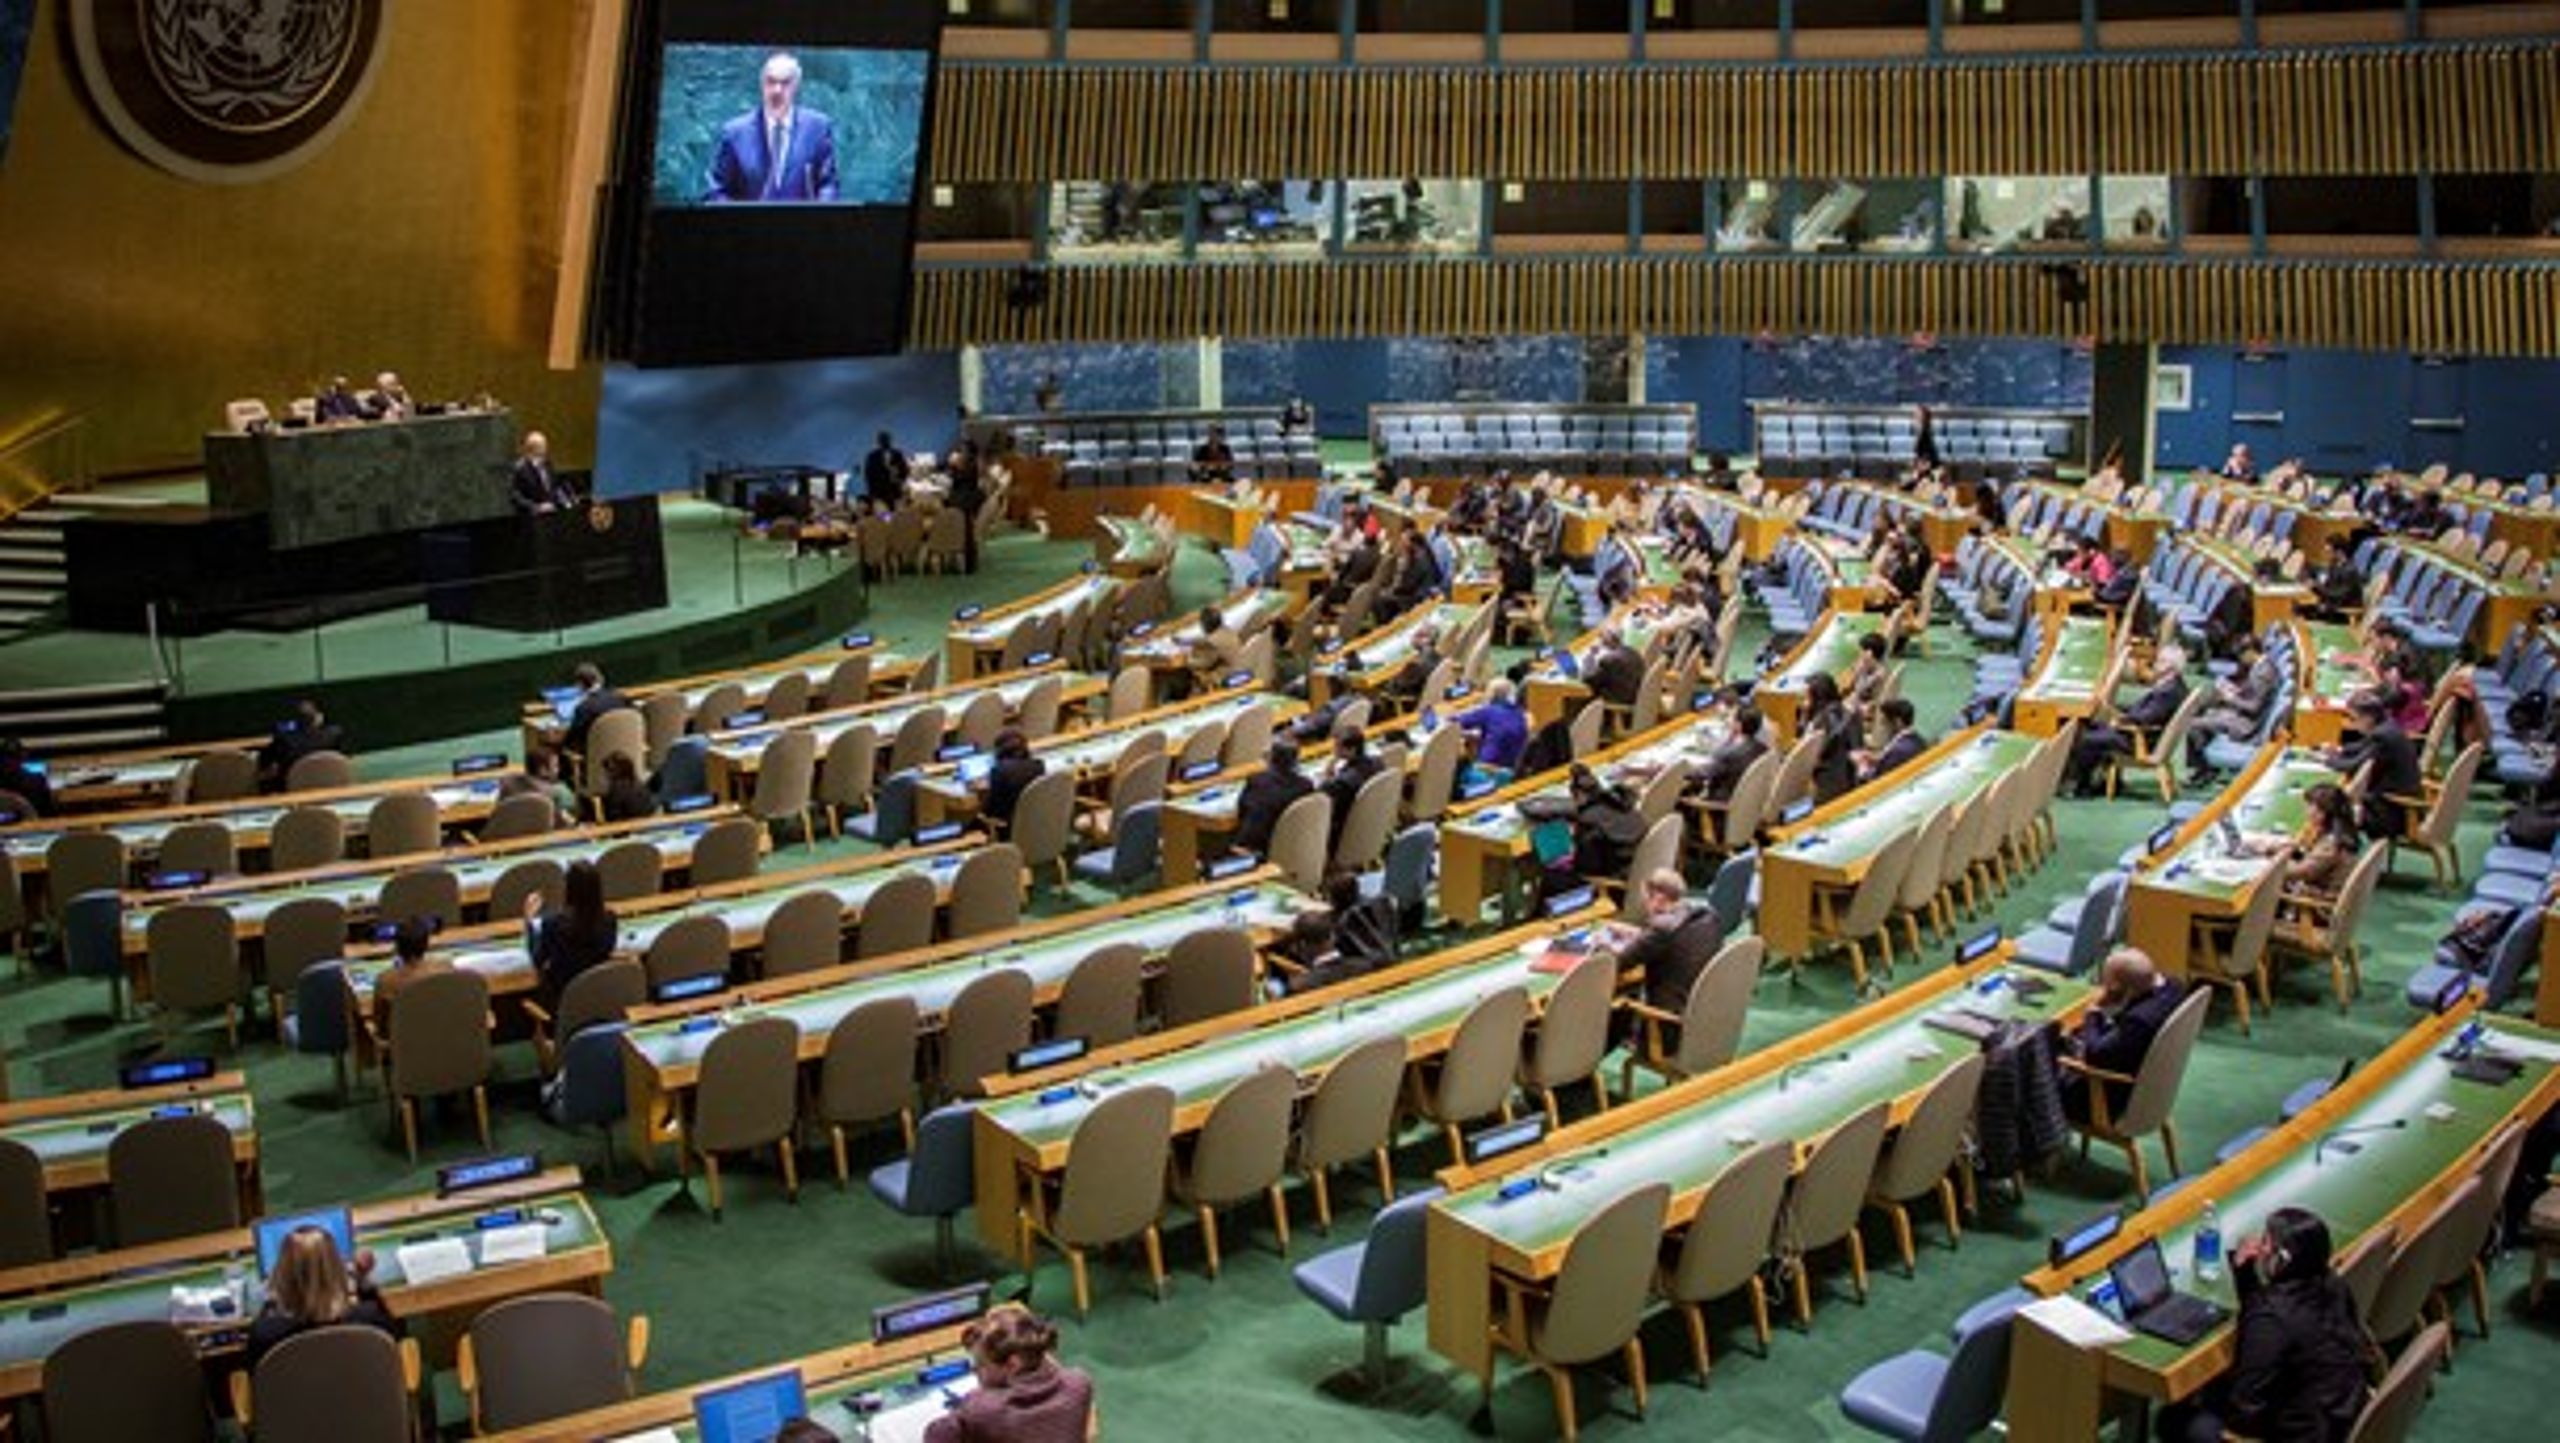 Civilsamfundets rolle er stærkt underspillet i den verdensmål, som verdens ledere samledes op i FN-regi i efteråret 2015.